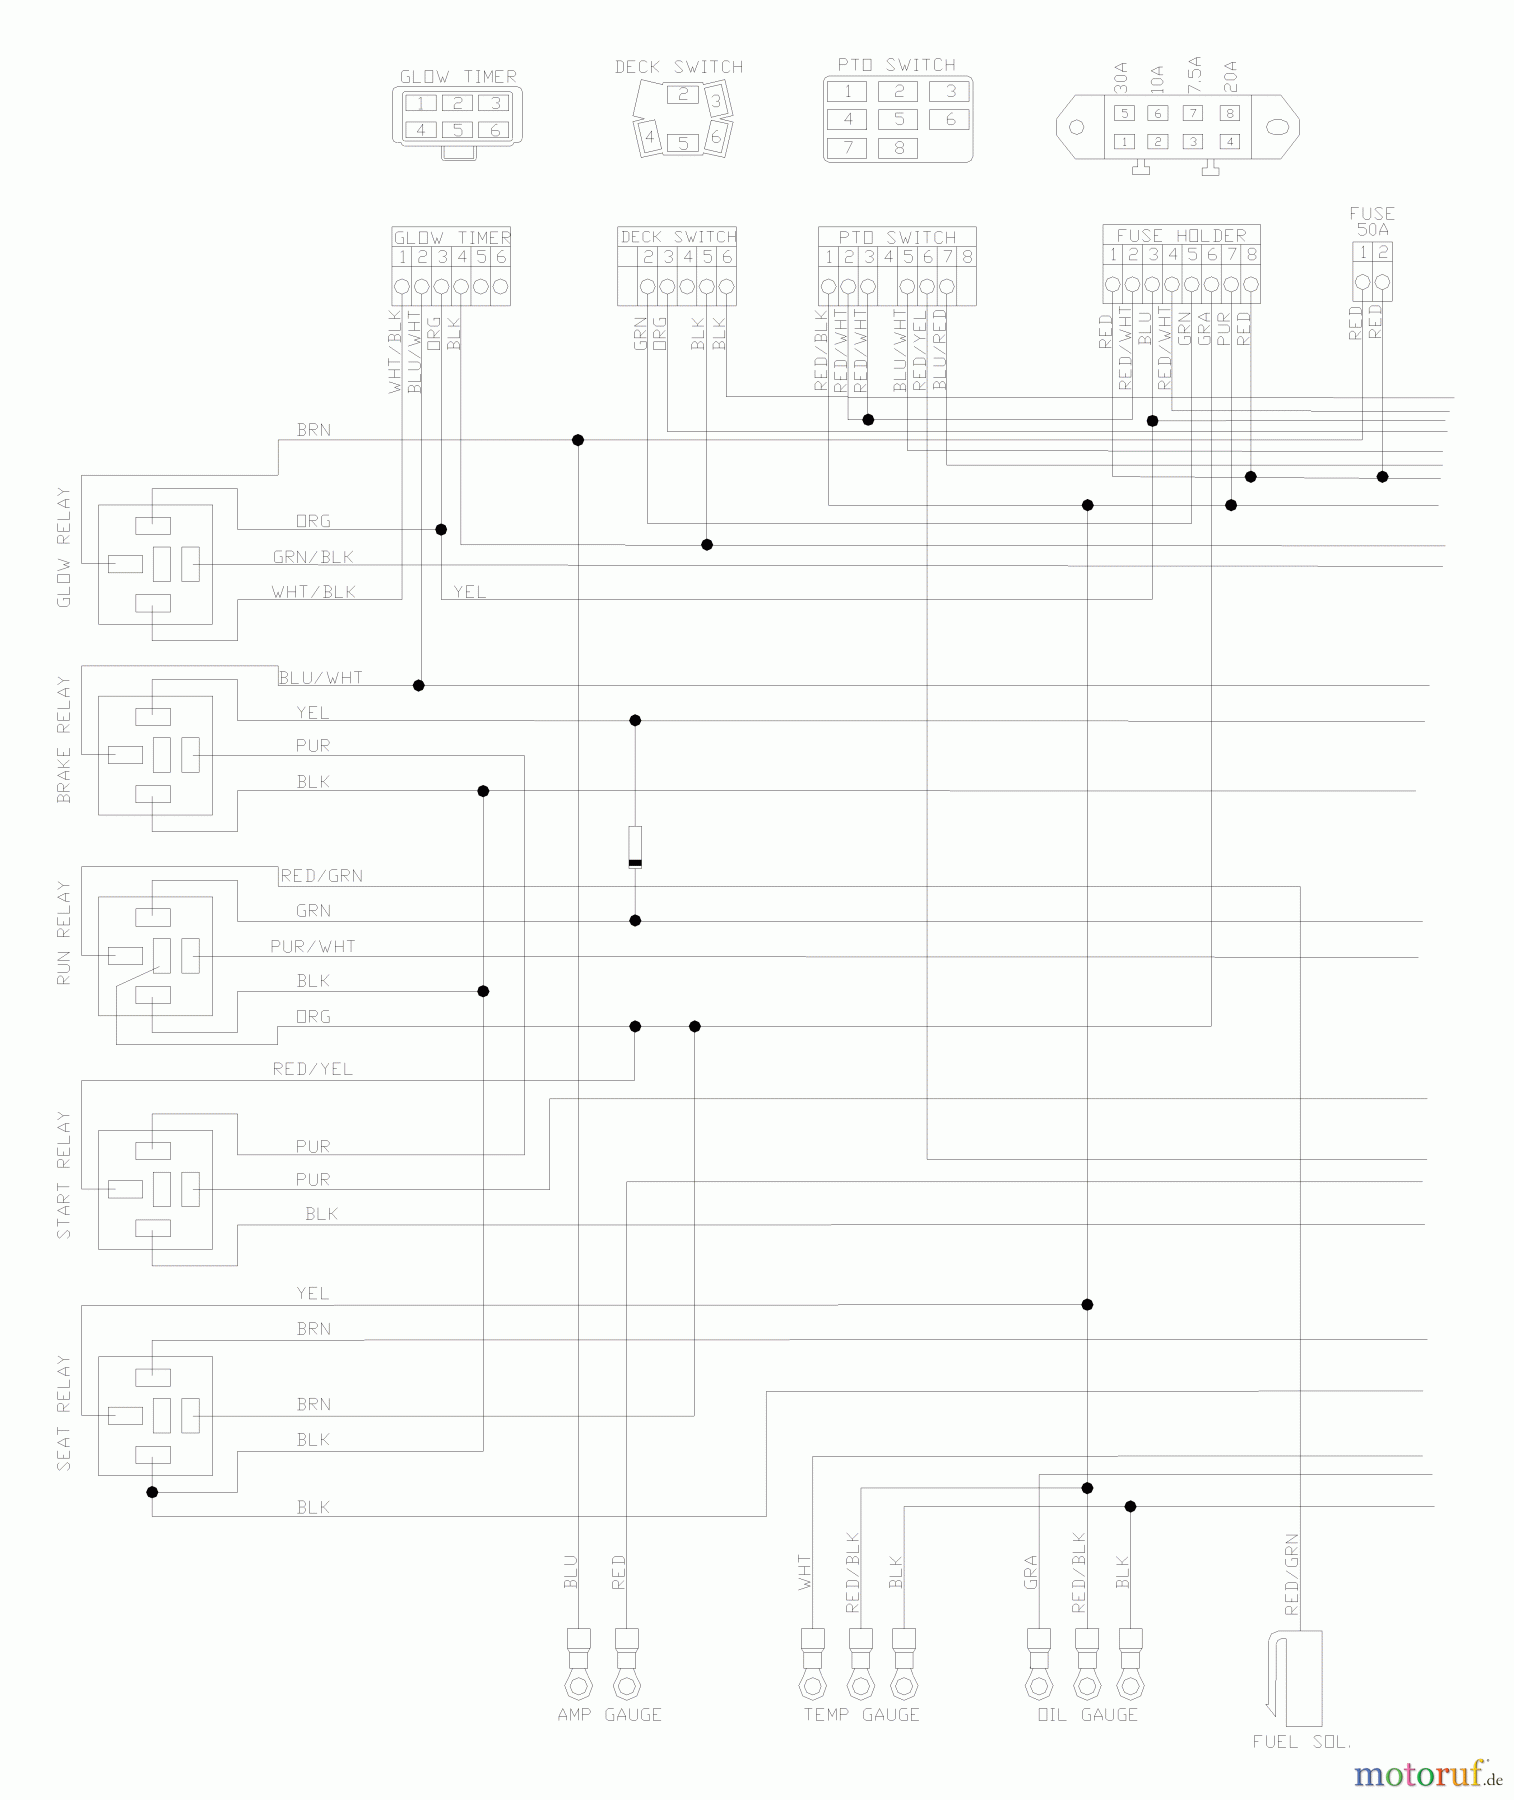  Husqvarna Nullwendekreismäher, Zero-Turn BZ 6134 D (968999214) - Husqvarna Zero-Turn Mower (2004-11 & After) (SN: 033600000 & Up) Wiring Schematic (Part 1)